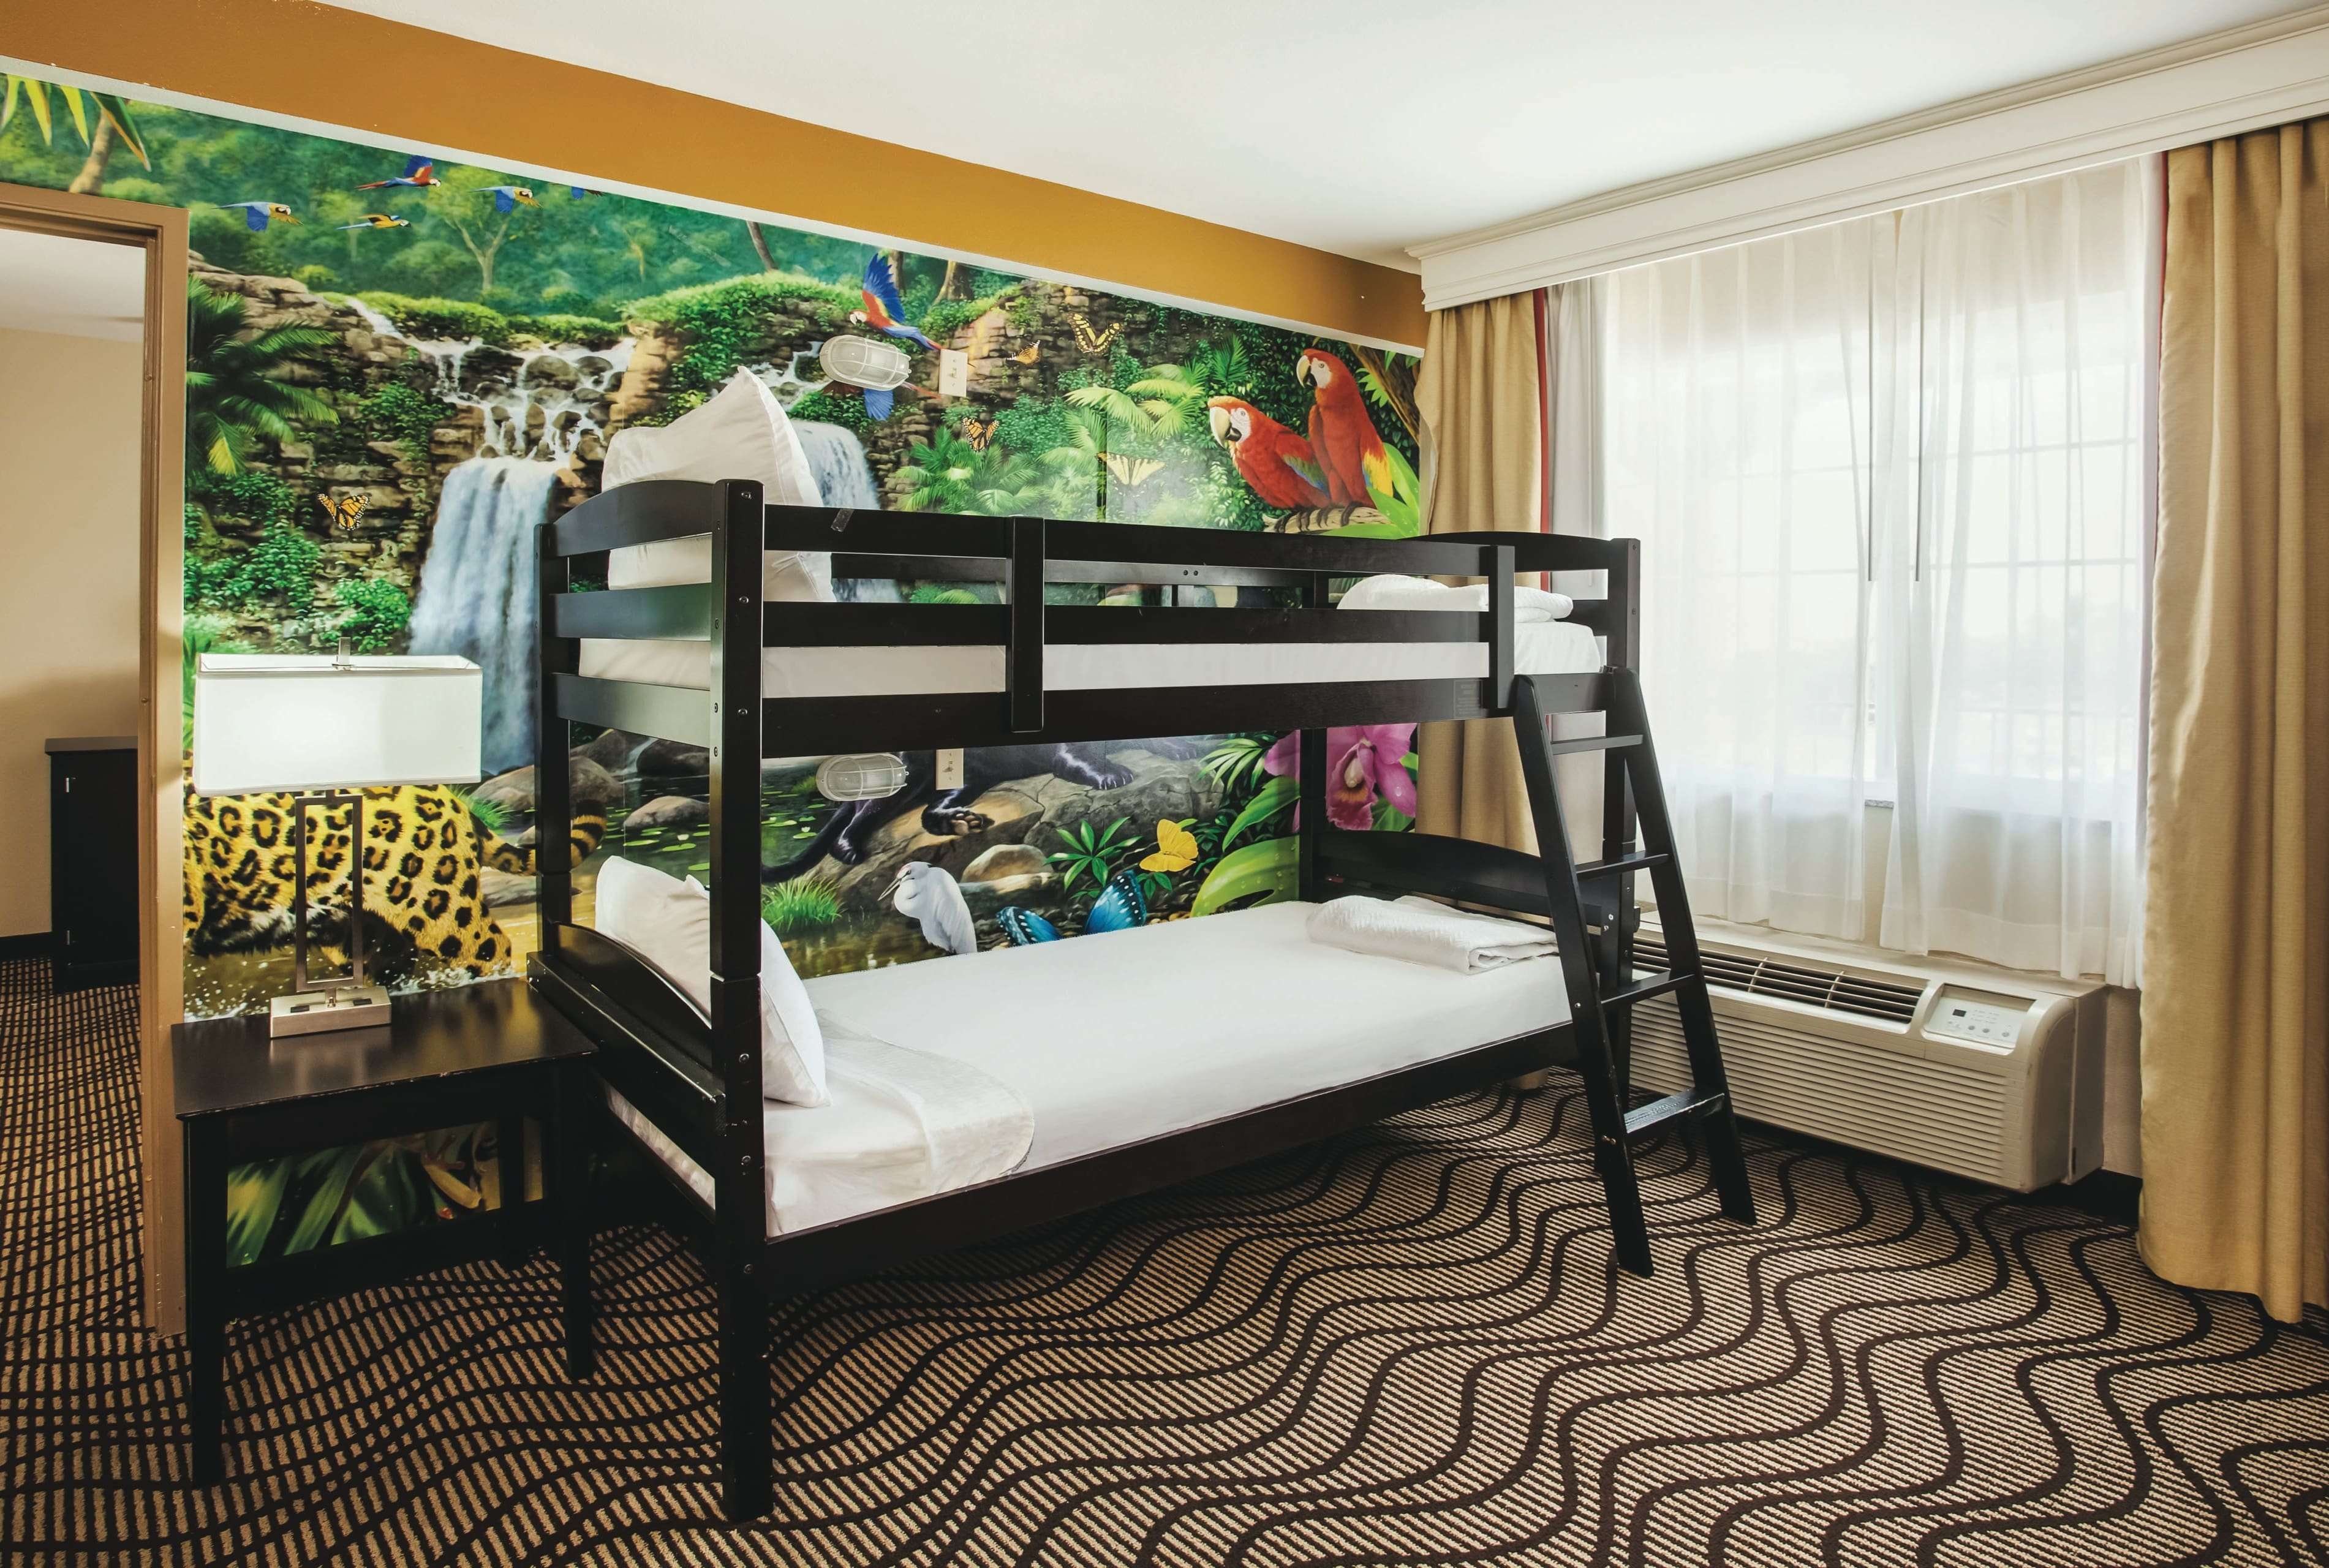 La Quinta Inn & Suites by Wyndham Carlsbad - Legoland Area